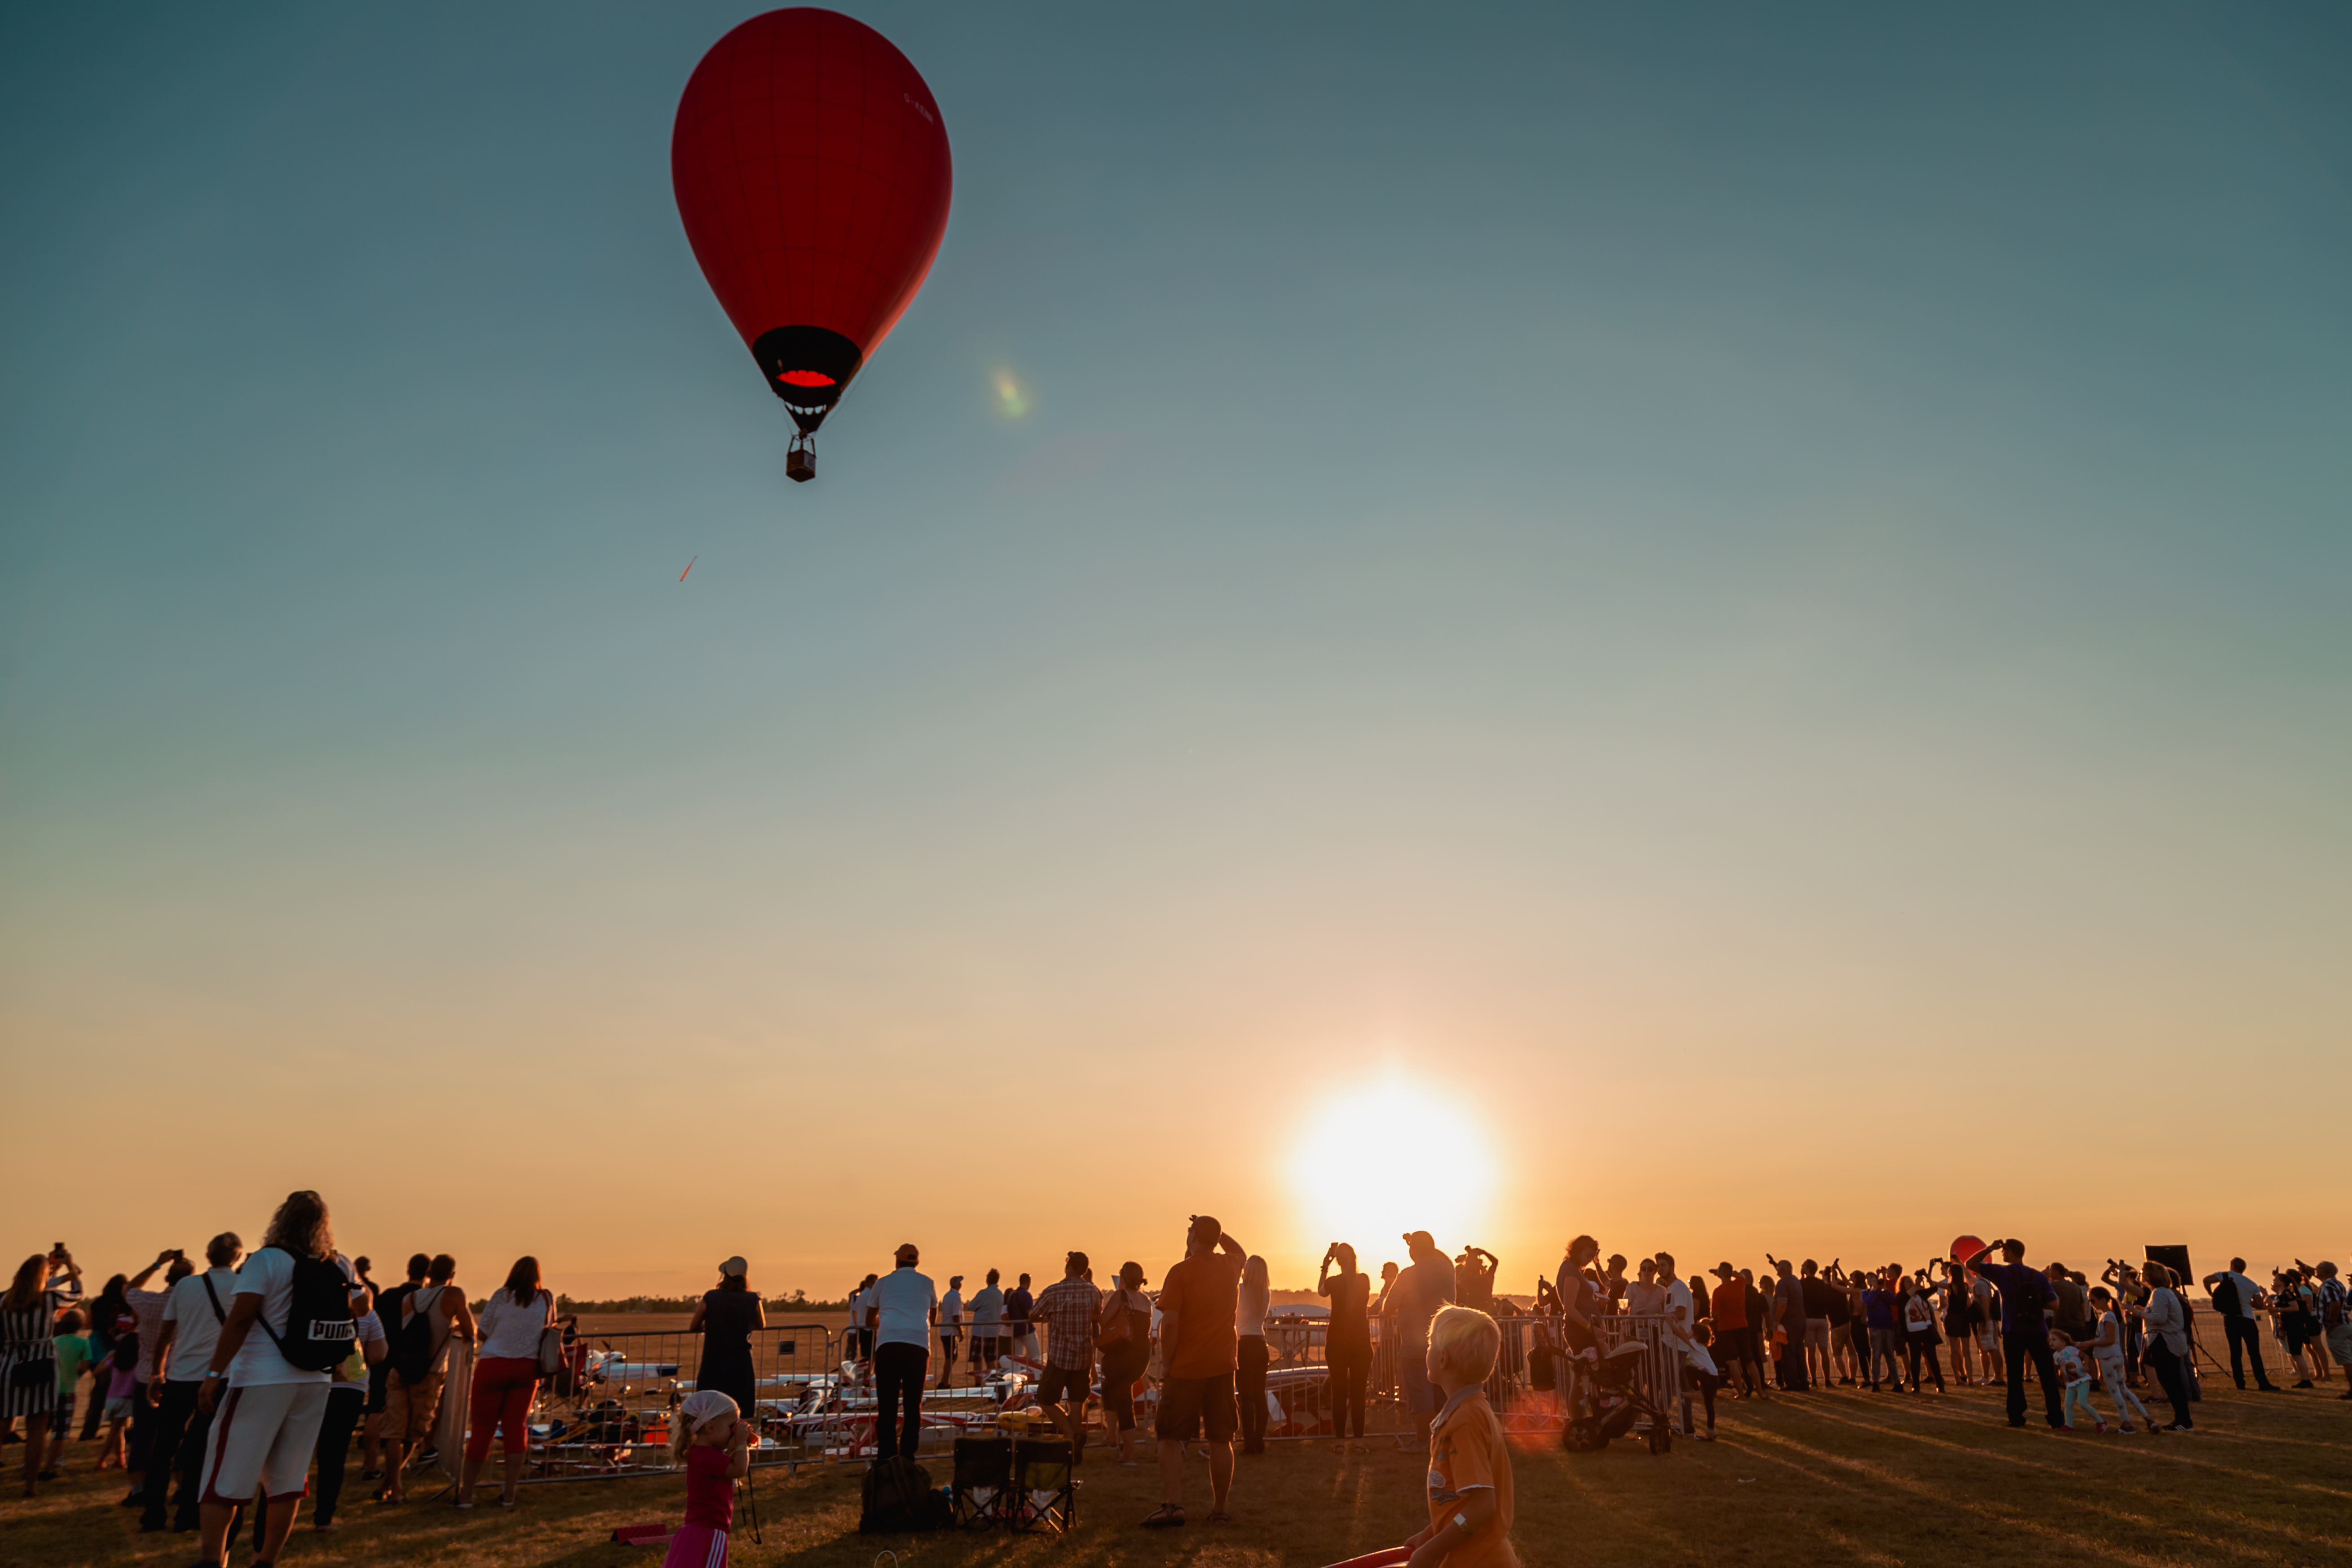 Visszatérő szegedi műsorszám a ballonok repülése